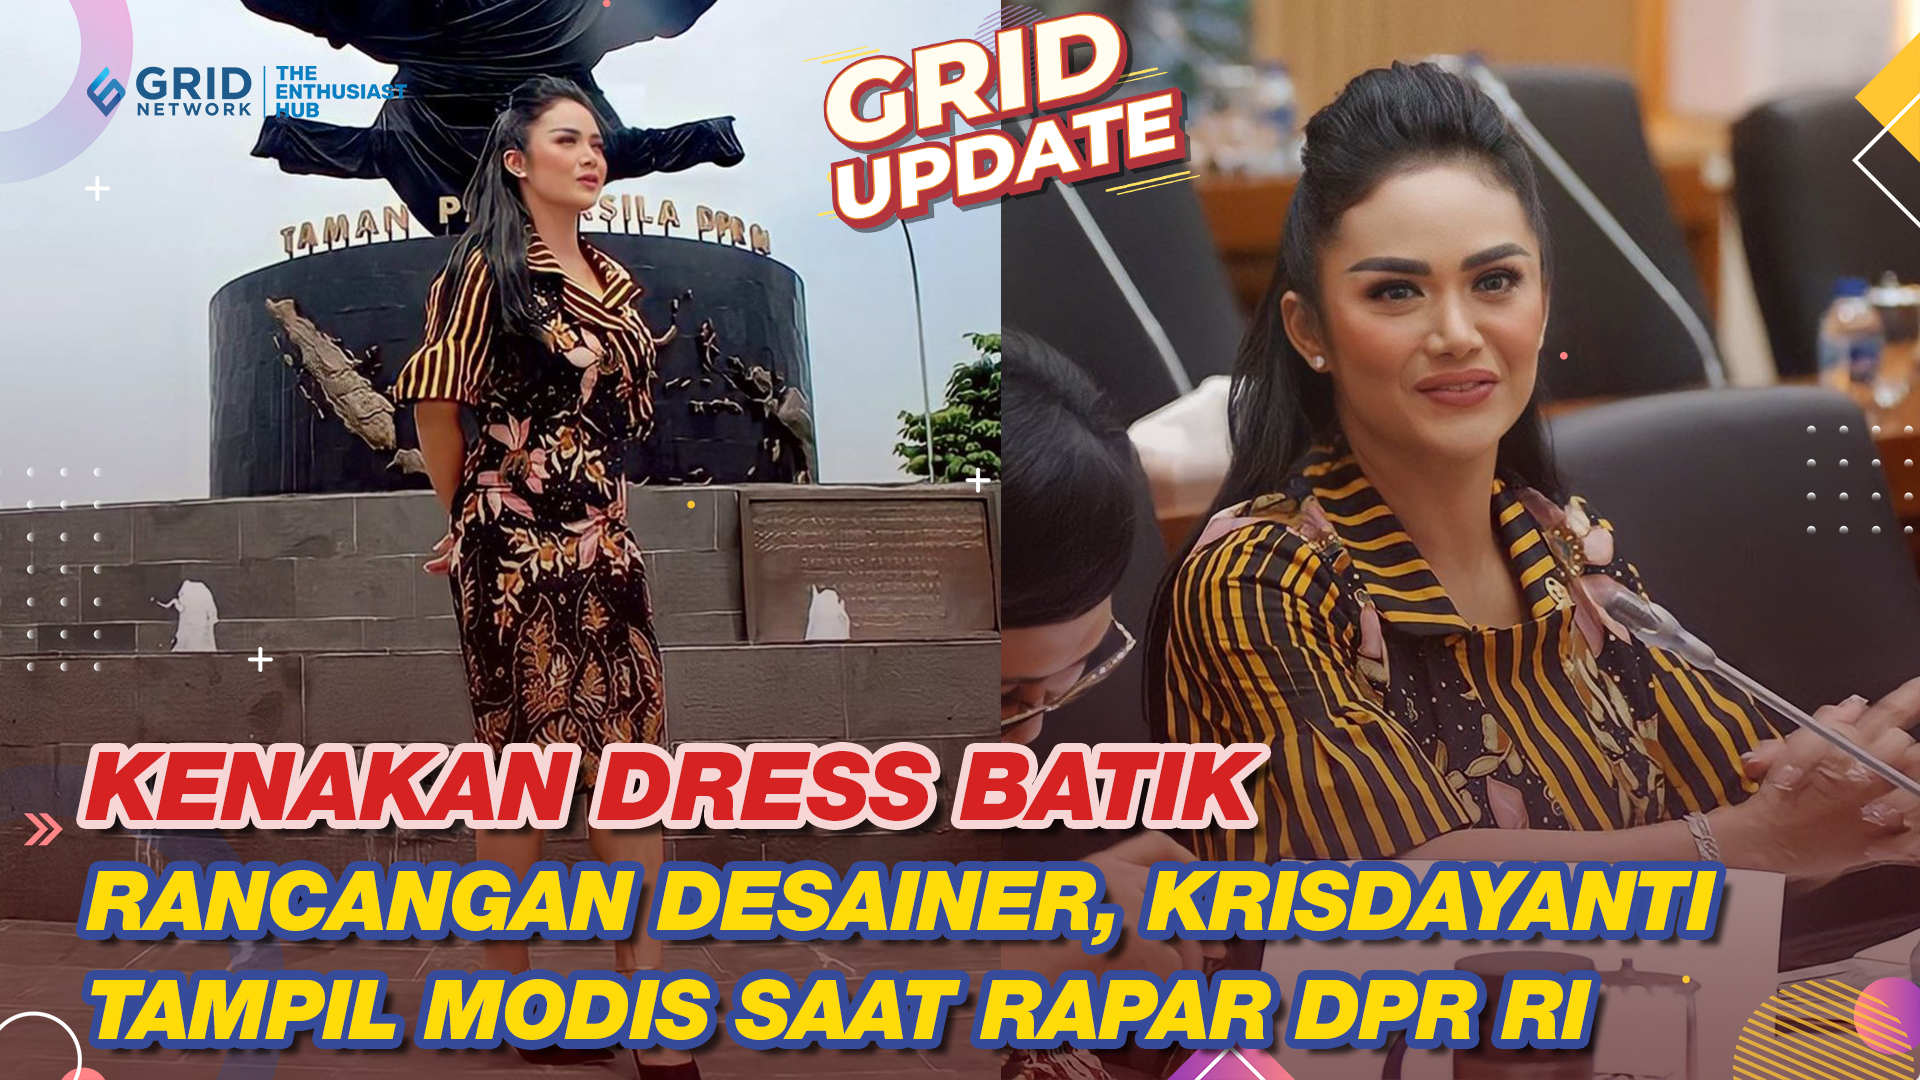 Tampil Modis Saat Rapat DPR-RI, Krisdayanti Bergaya Kenakan Dress Batik Rancangan Desainer Ternama!